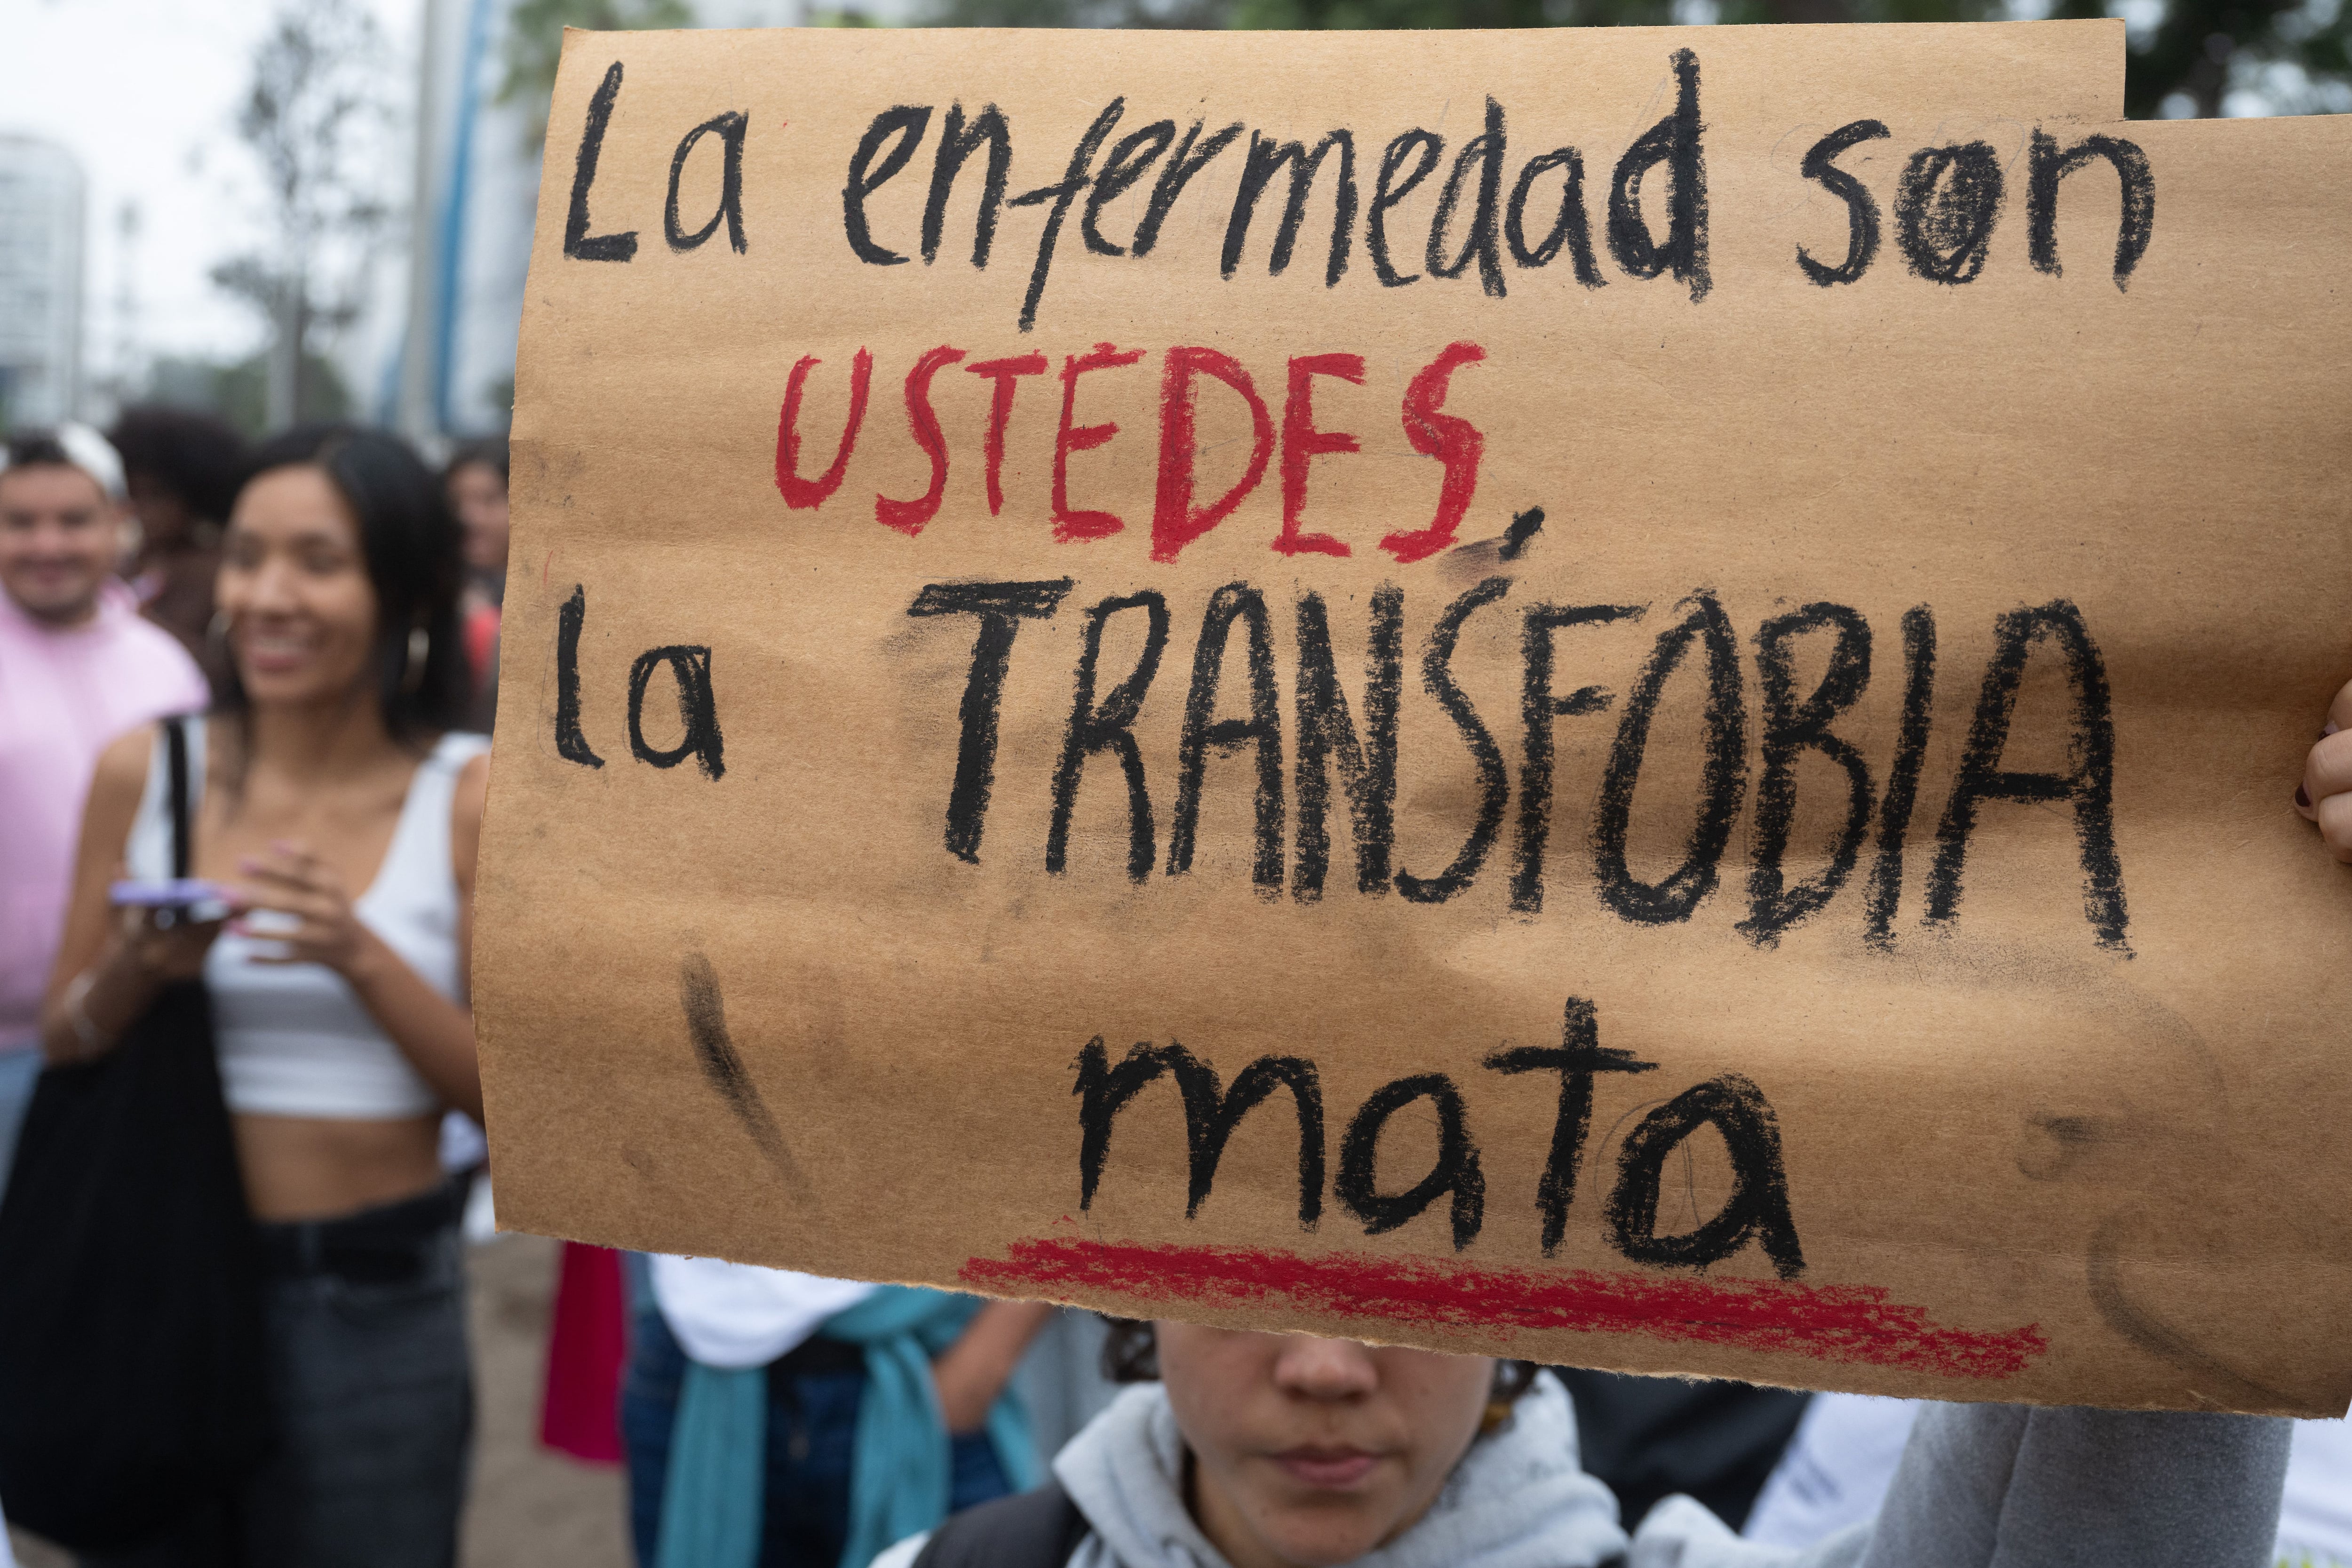 Perú catalogó la transexualidad como un trastorno mental y ya hay protestas